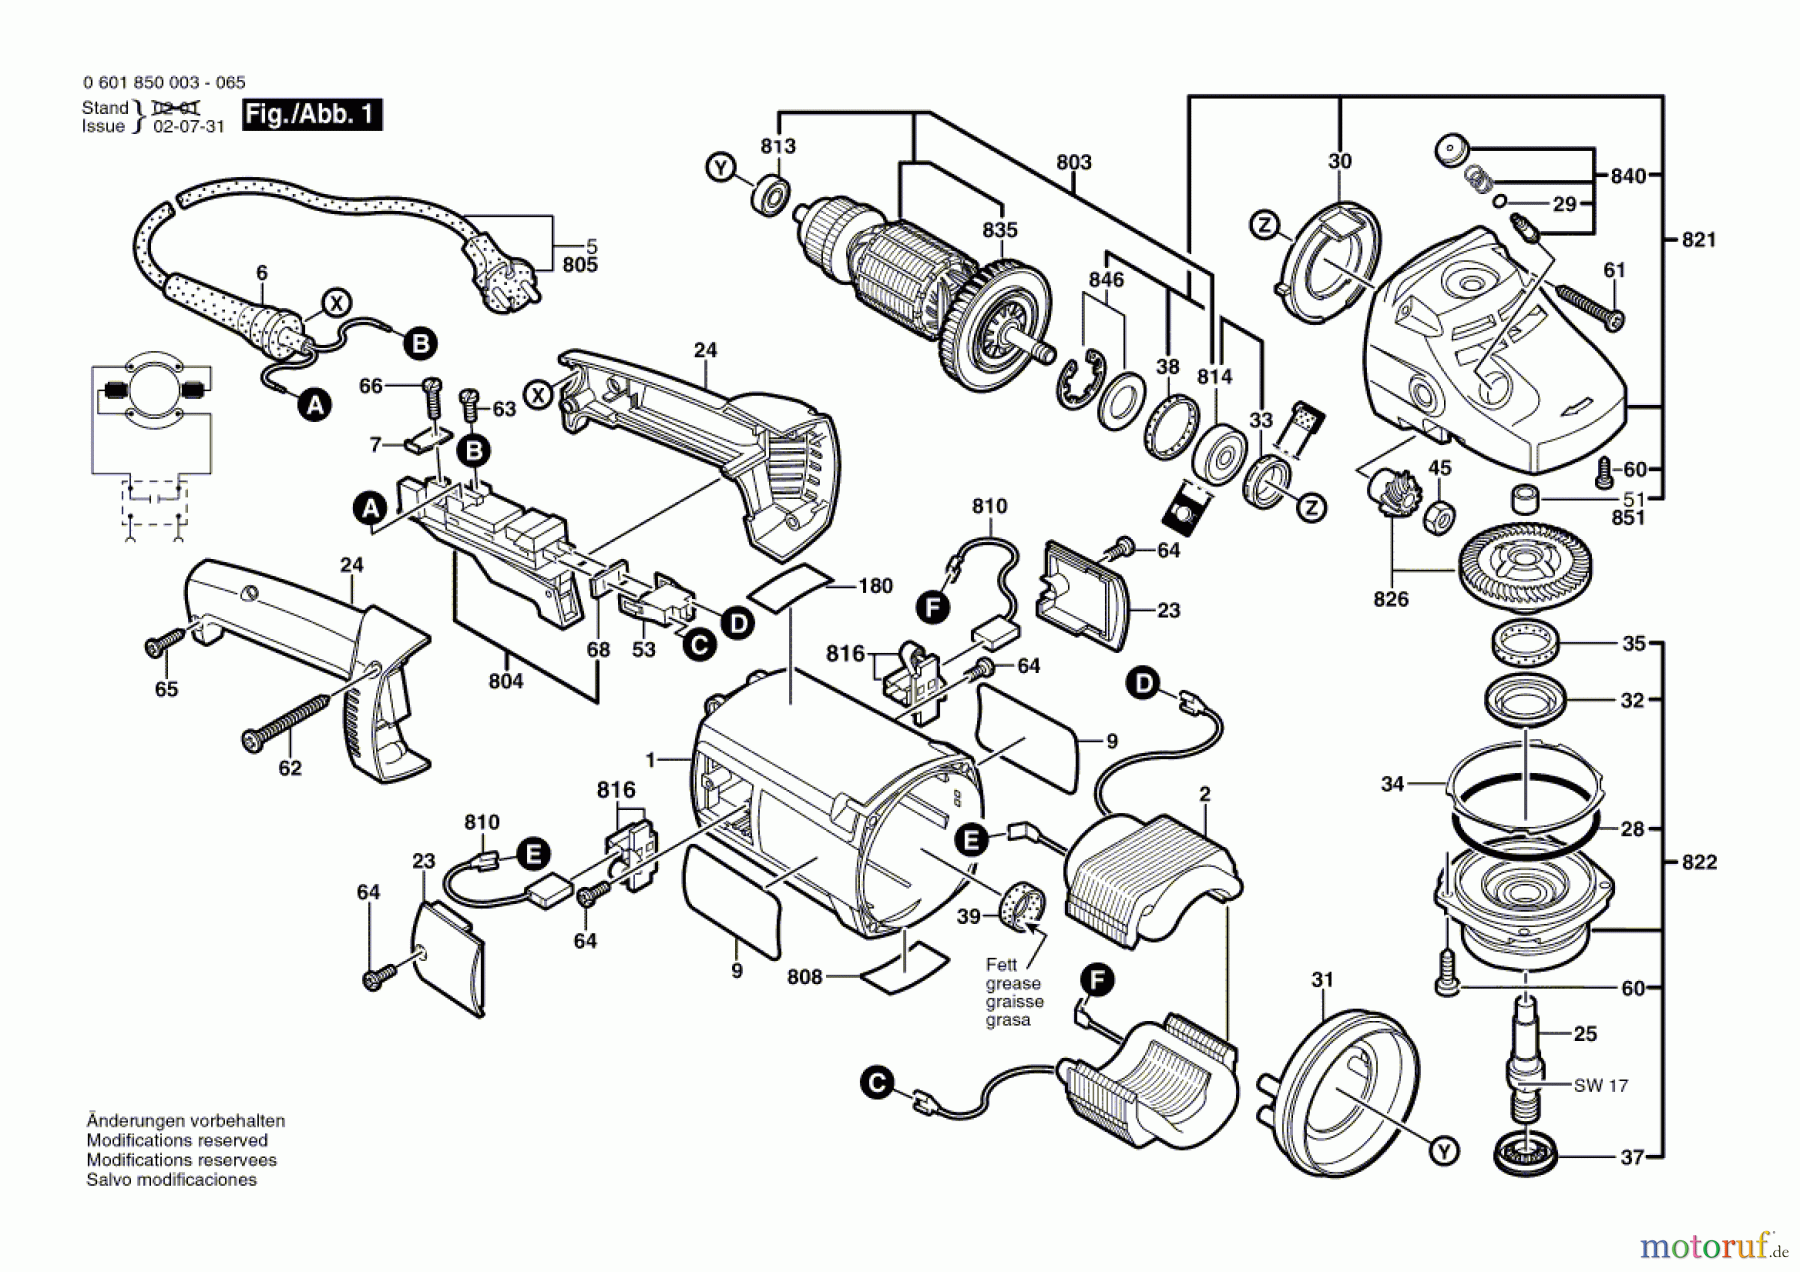  Bosch Werkzeug Winkelschleifer GWS 20-230 H Seite 1